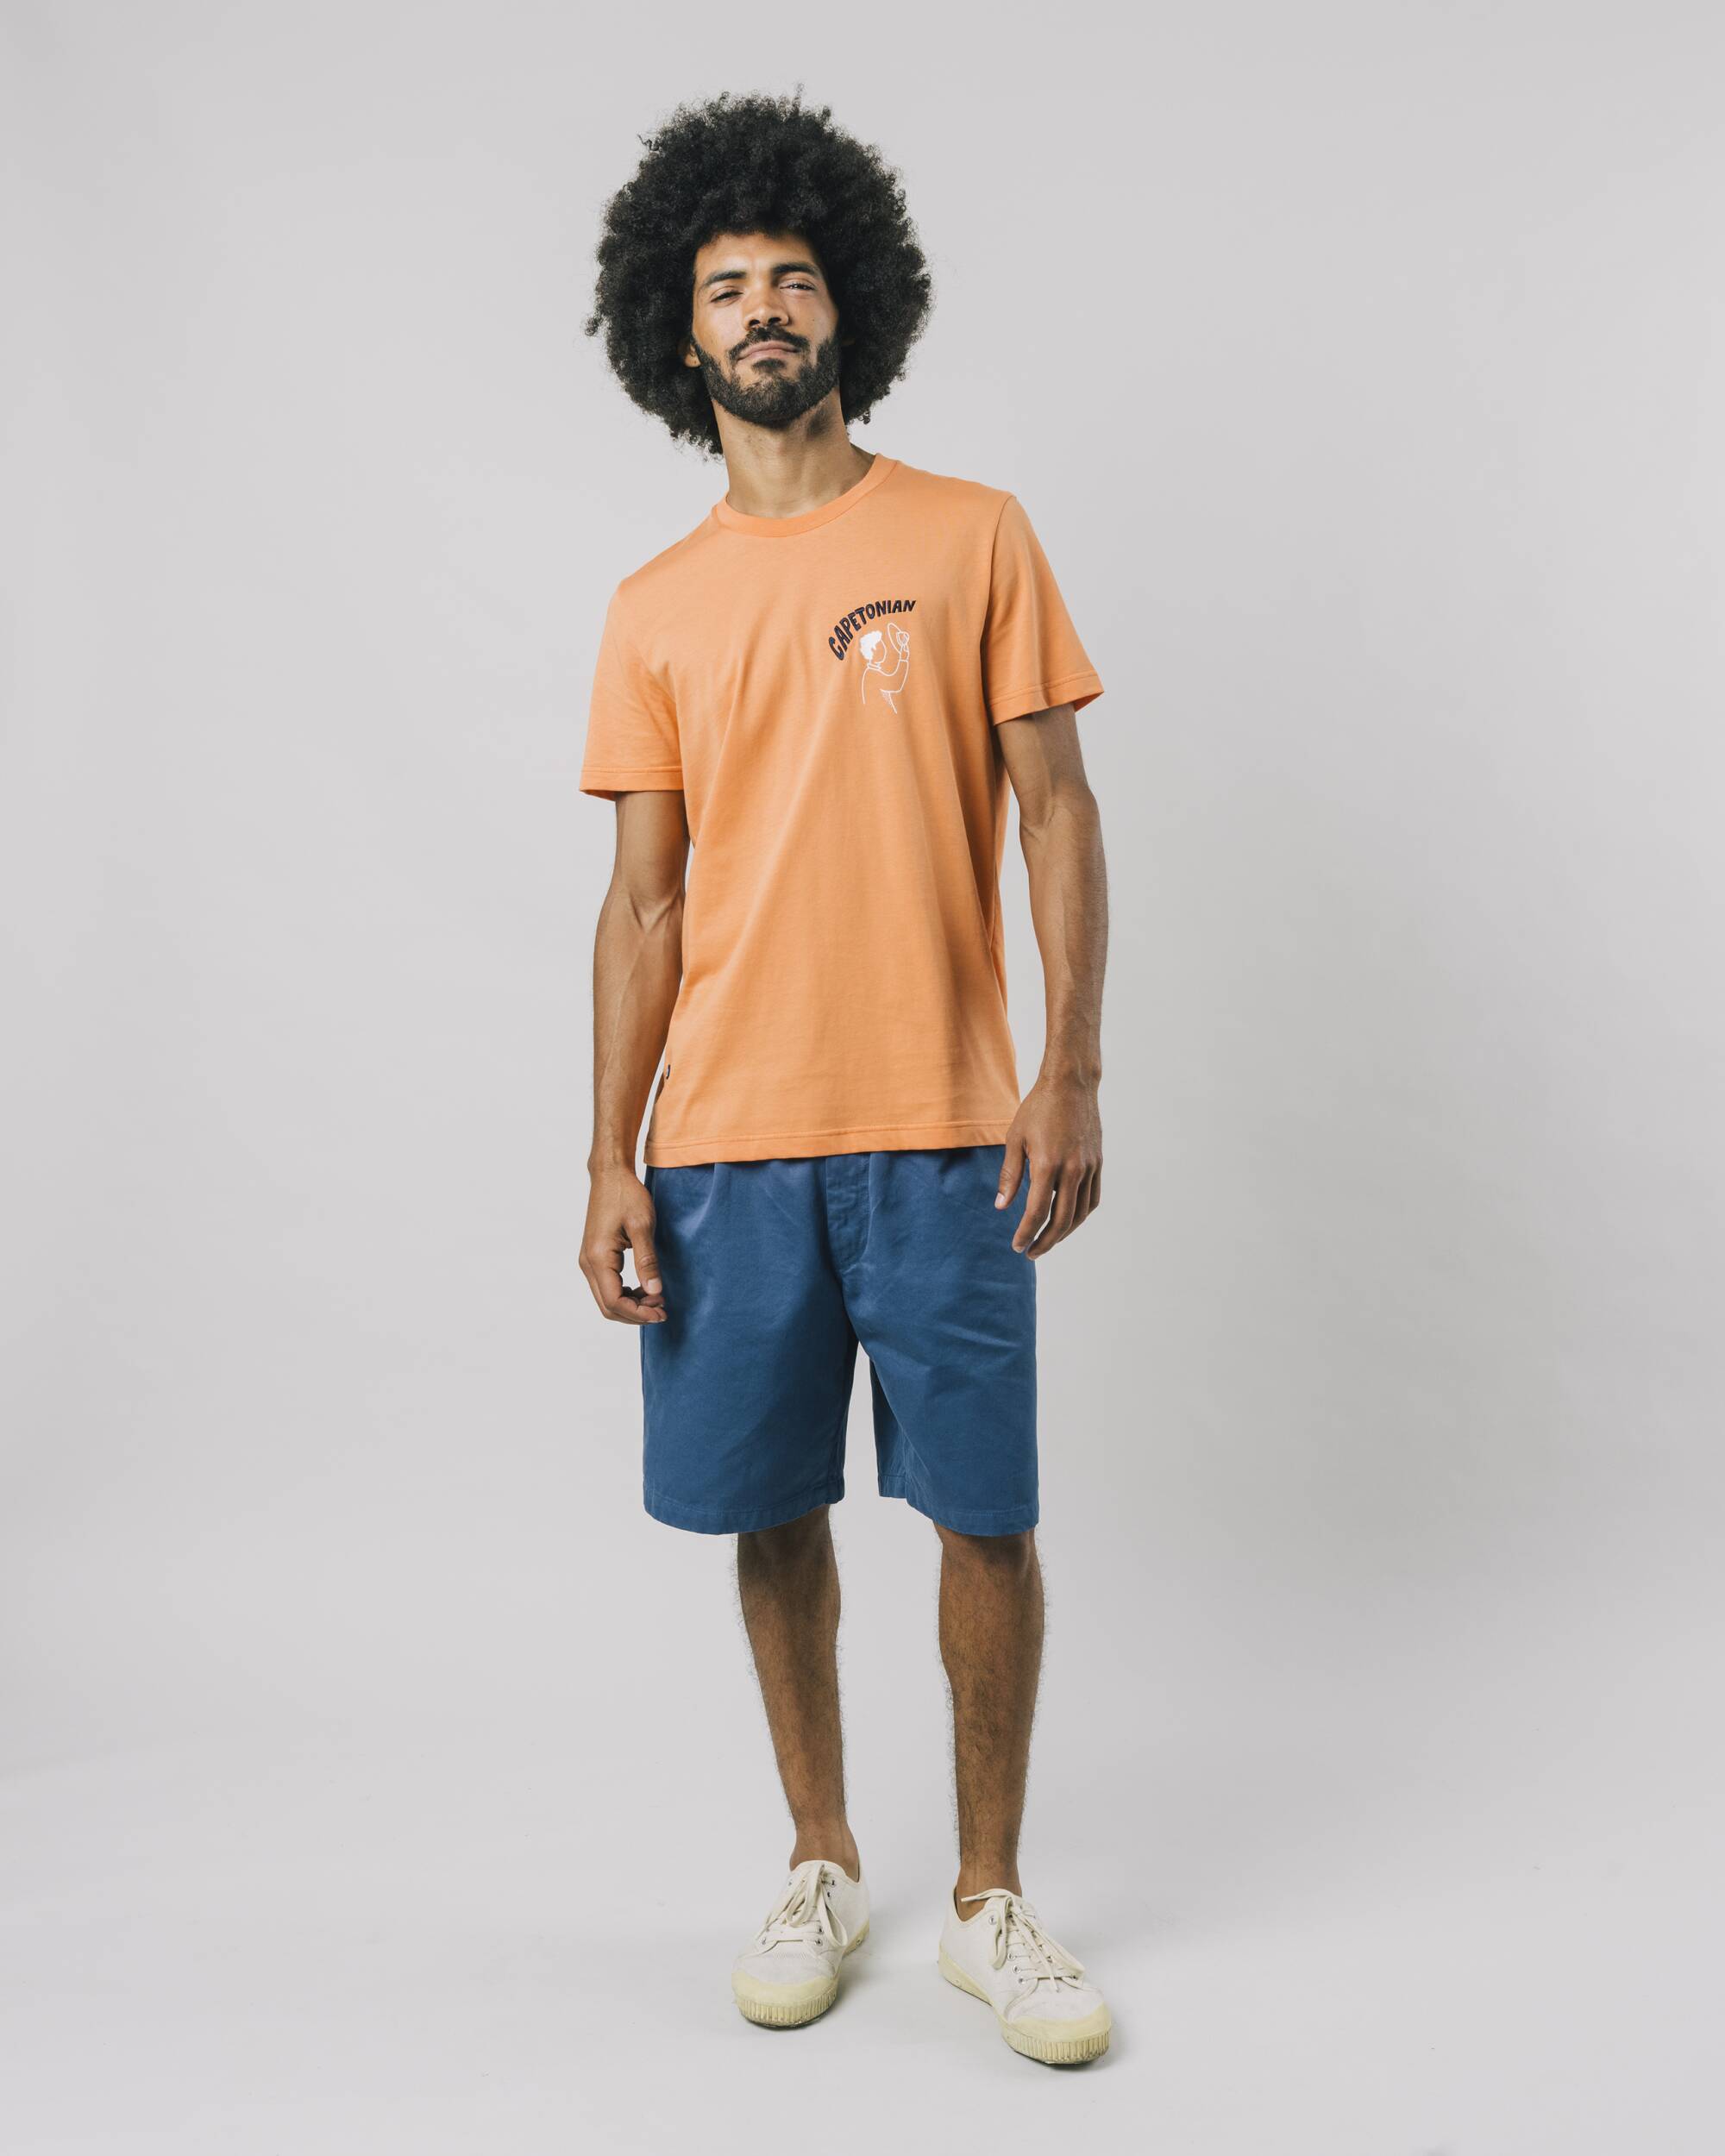 T-Shirt "Capetonian" in orange aus 100% Bio - Baumwolle von Brava Fabrics